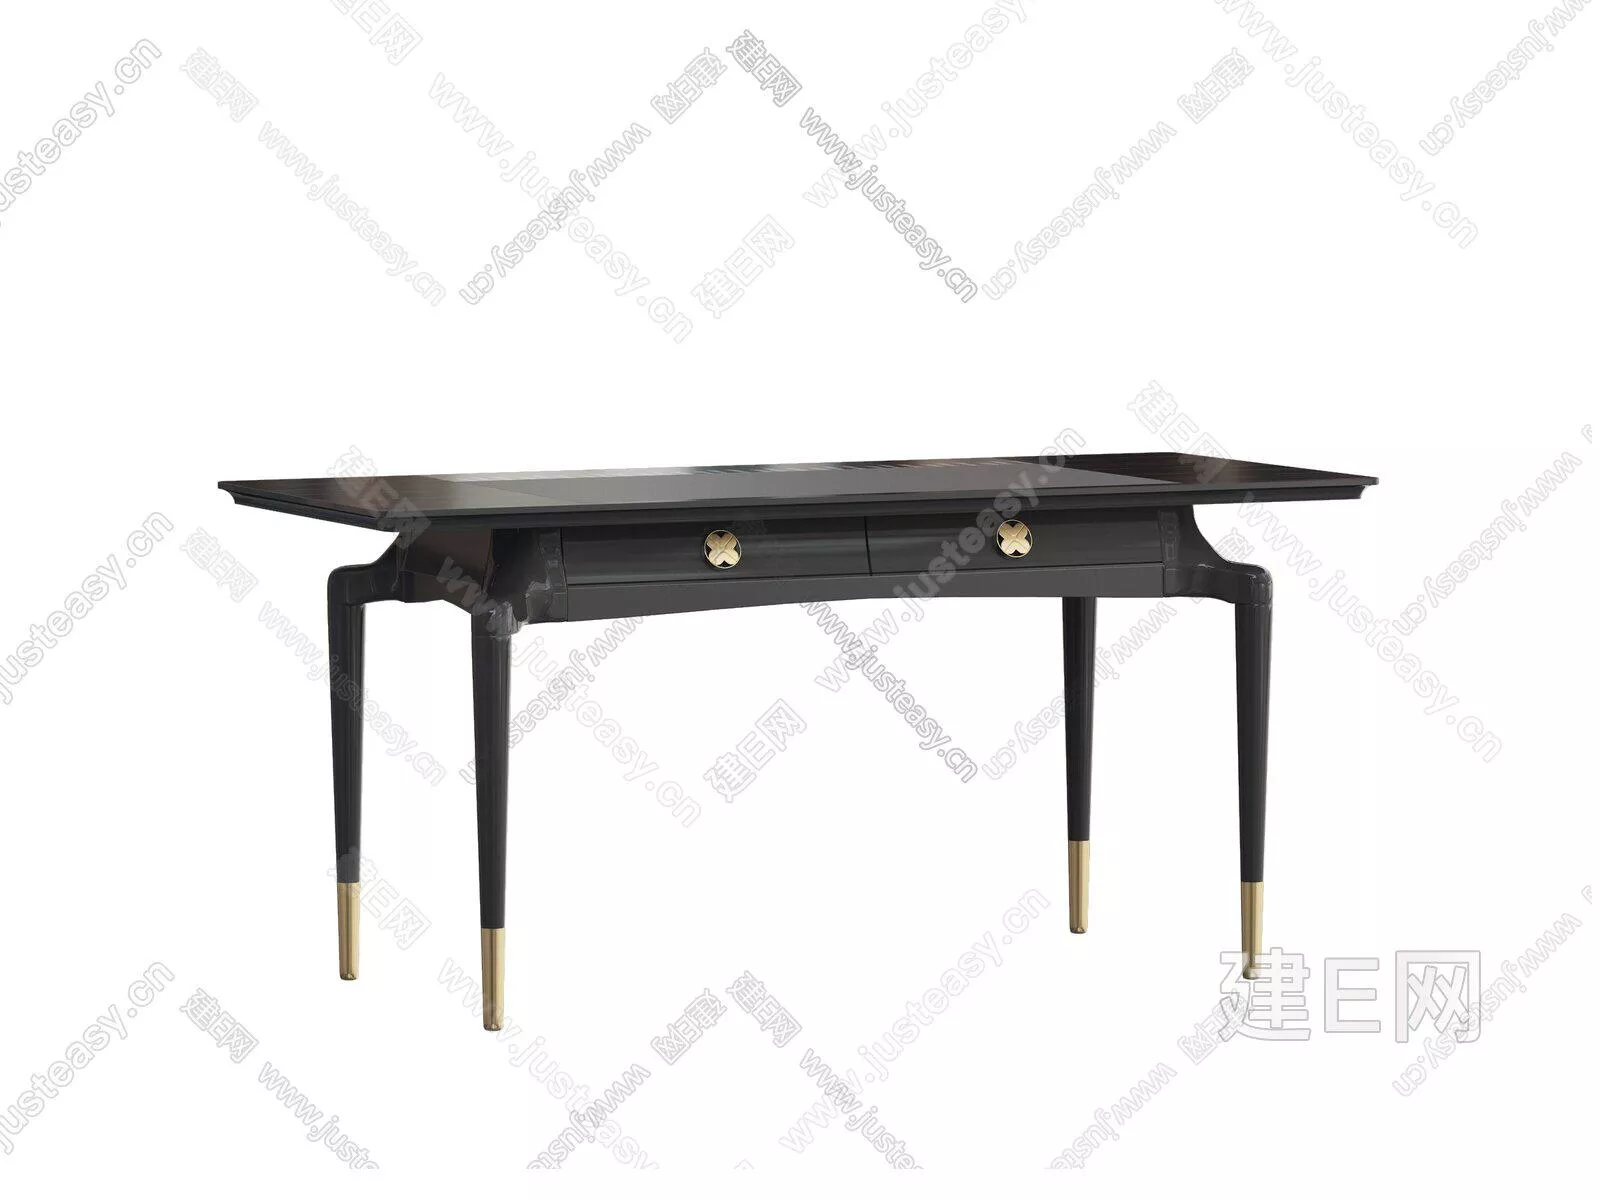 MODERN DINING TABLE SET - SKETCHUP 3D MODEL - ENSCAPE - 104941710